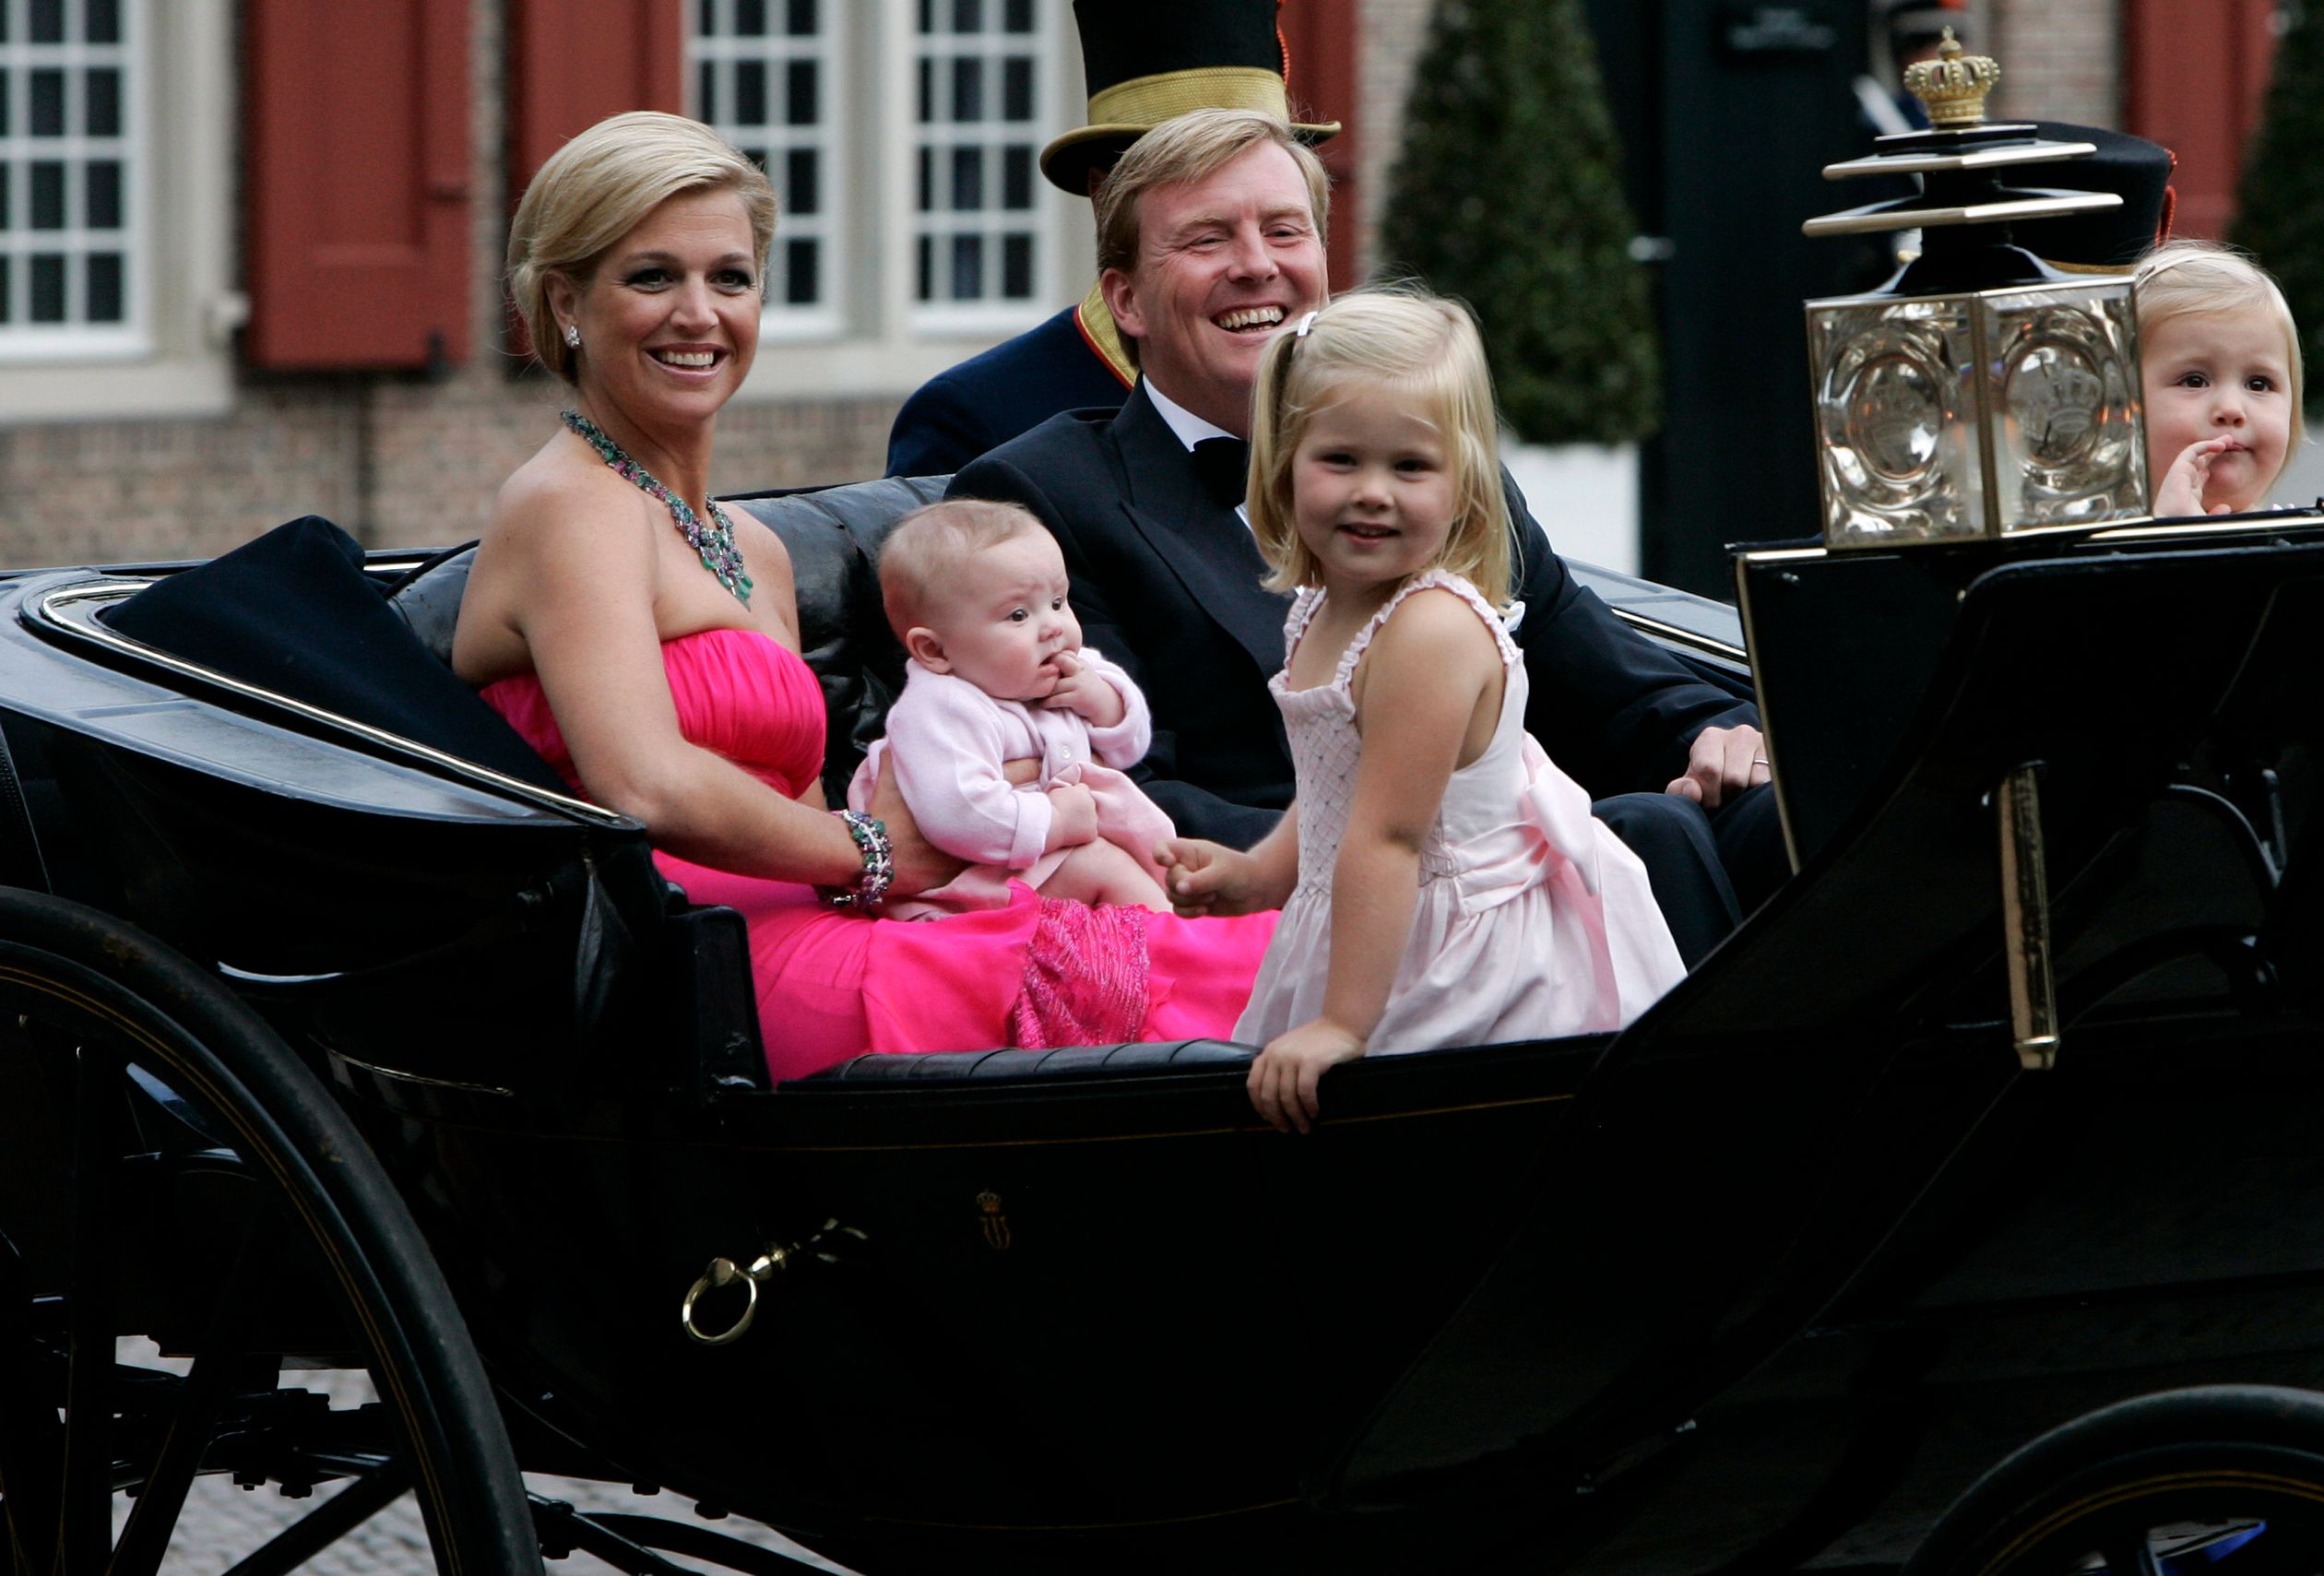 Kroonprins Willem-Alexander en prinses Máxima arriveren met hun dochters bij Paleis Het Loo.